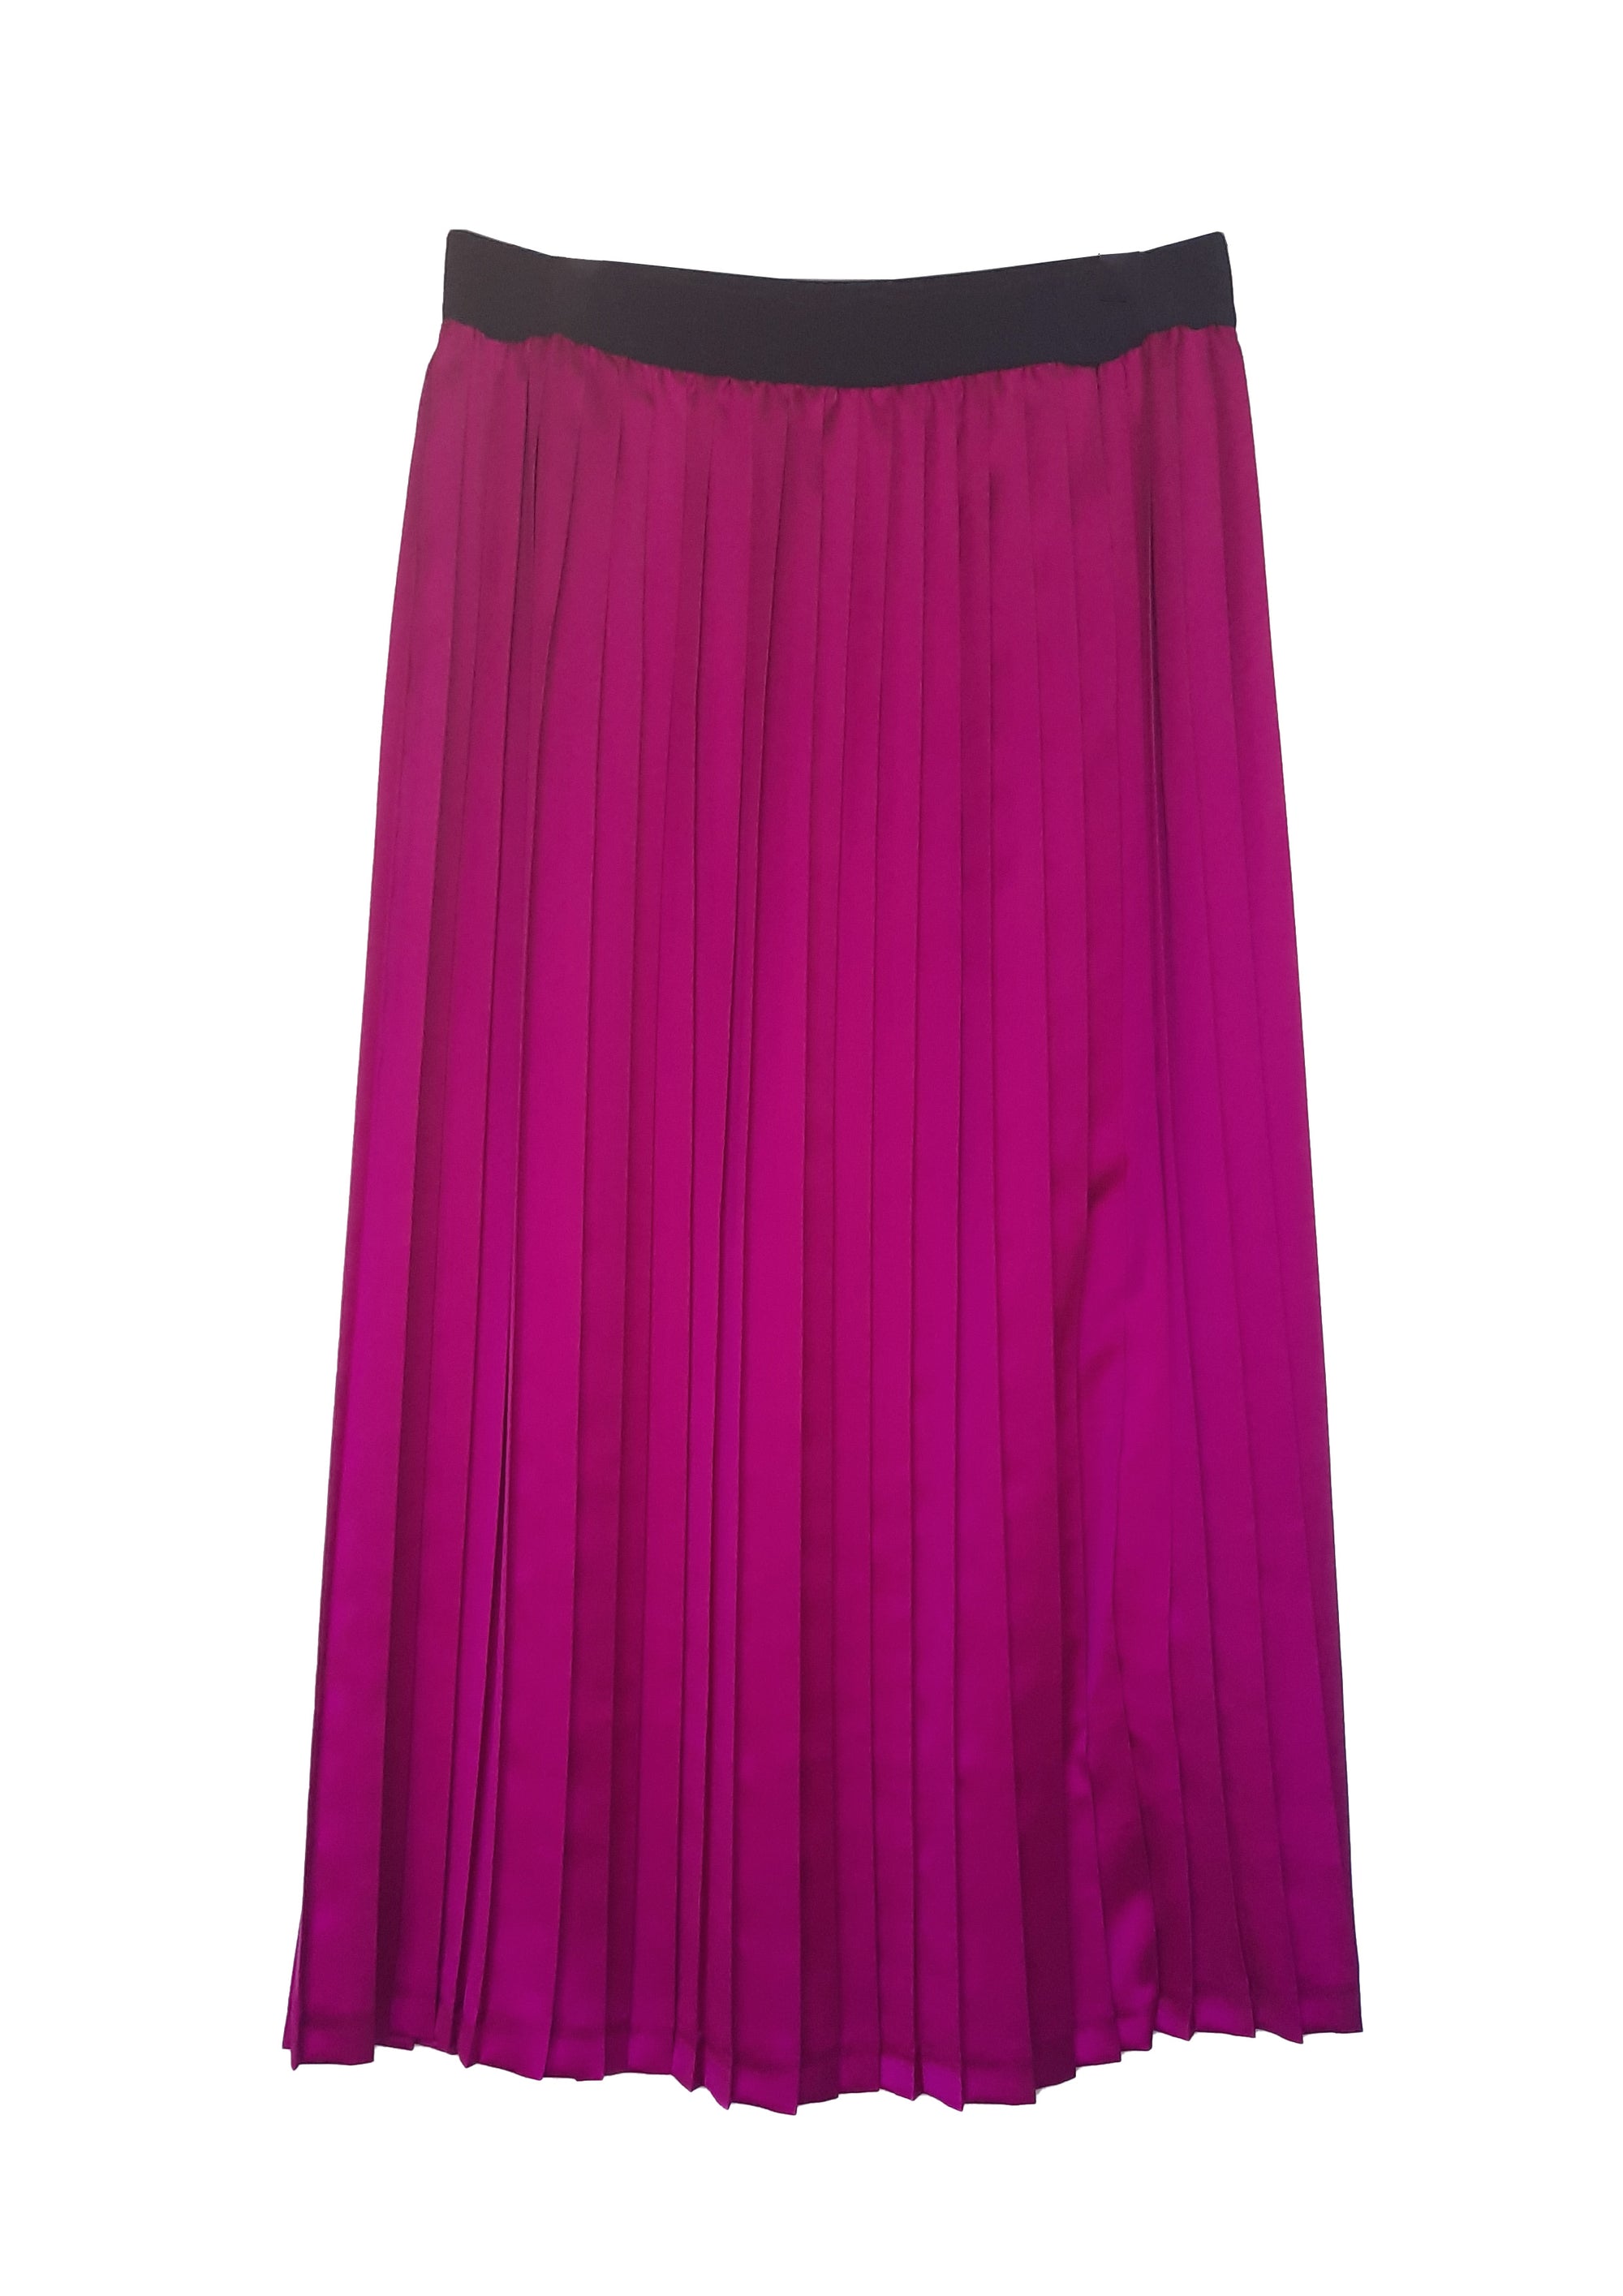 Fuchsia Pleated Skirt with elasticated waistband